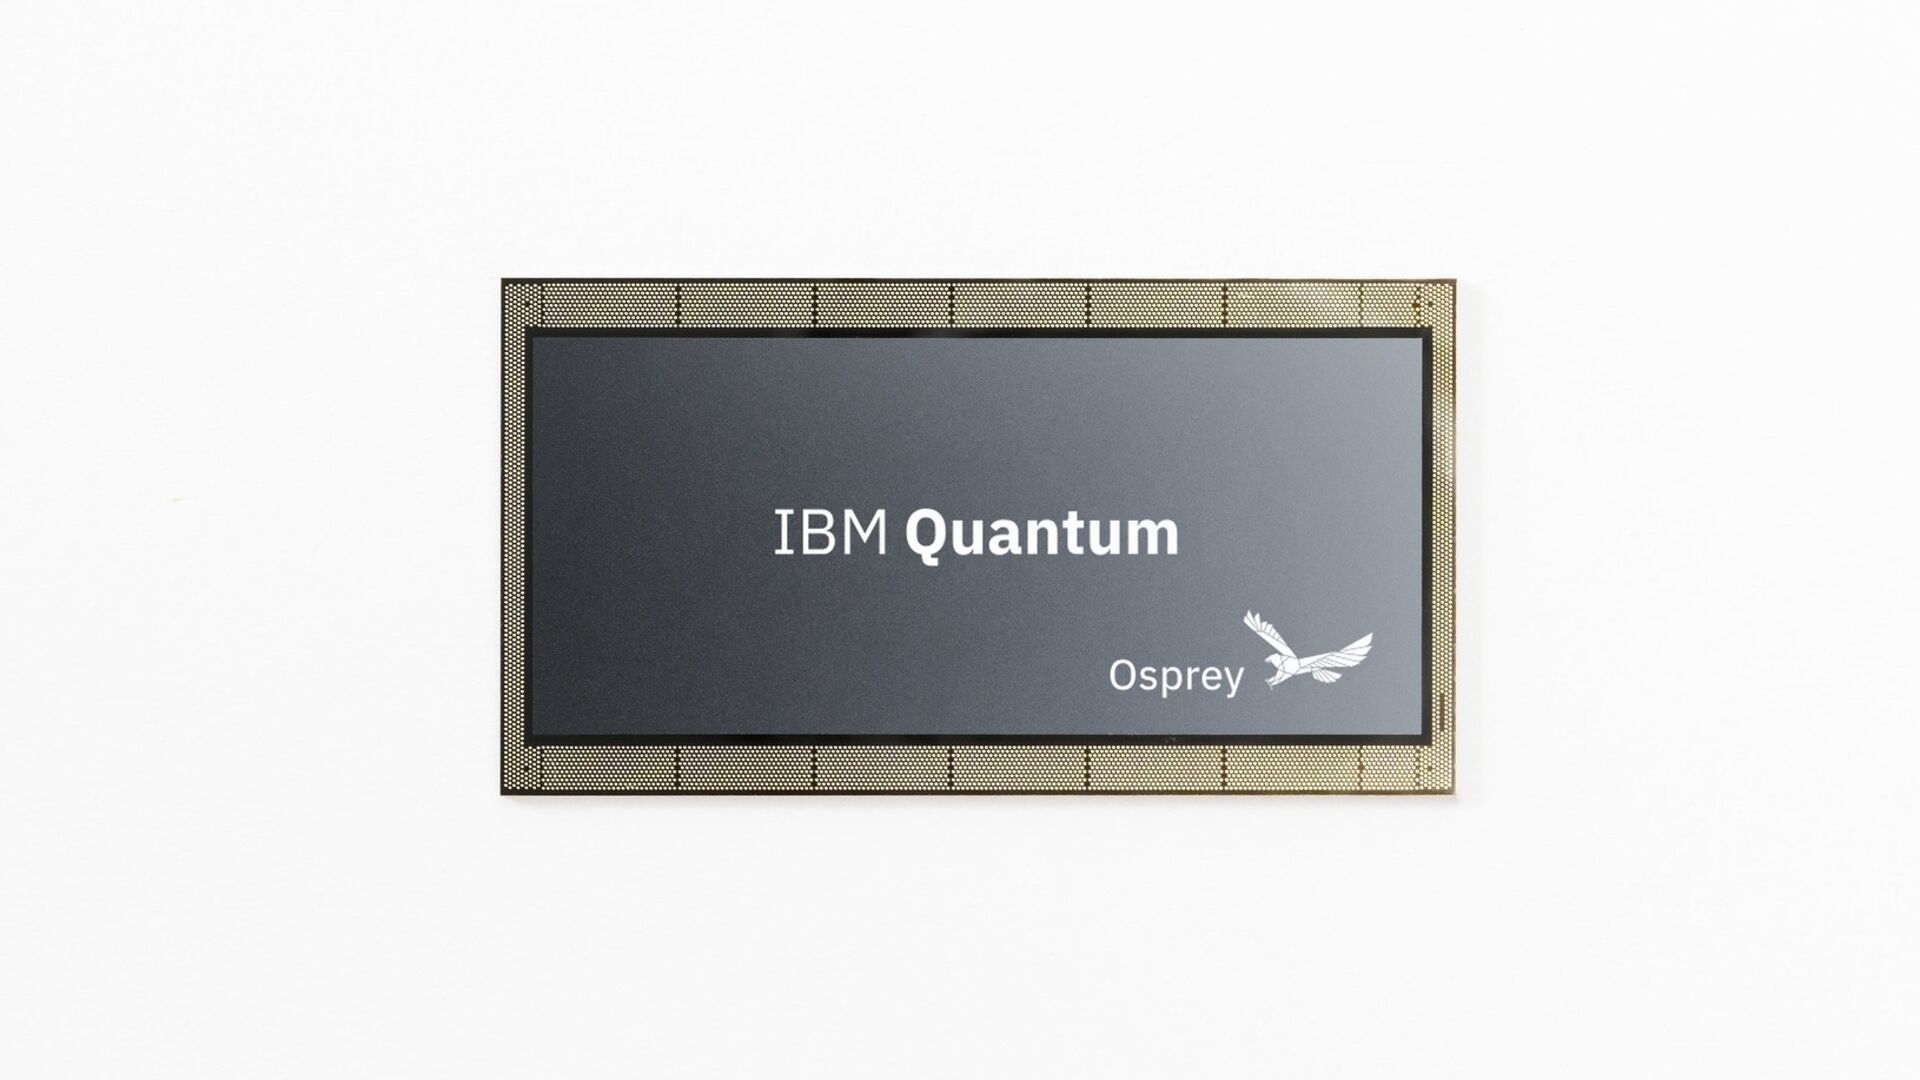 433 क्यूबिट आईबीएम "ऑस्प्रे" क्वांटम प्रोसेसर की प्रस्तुति